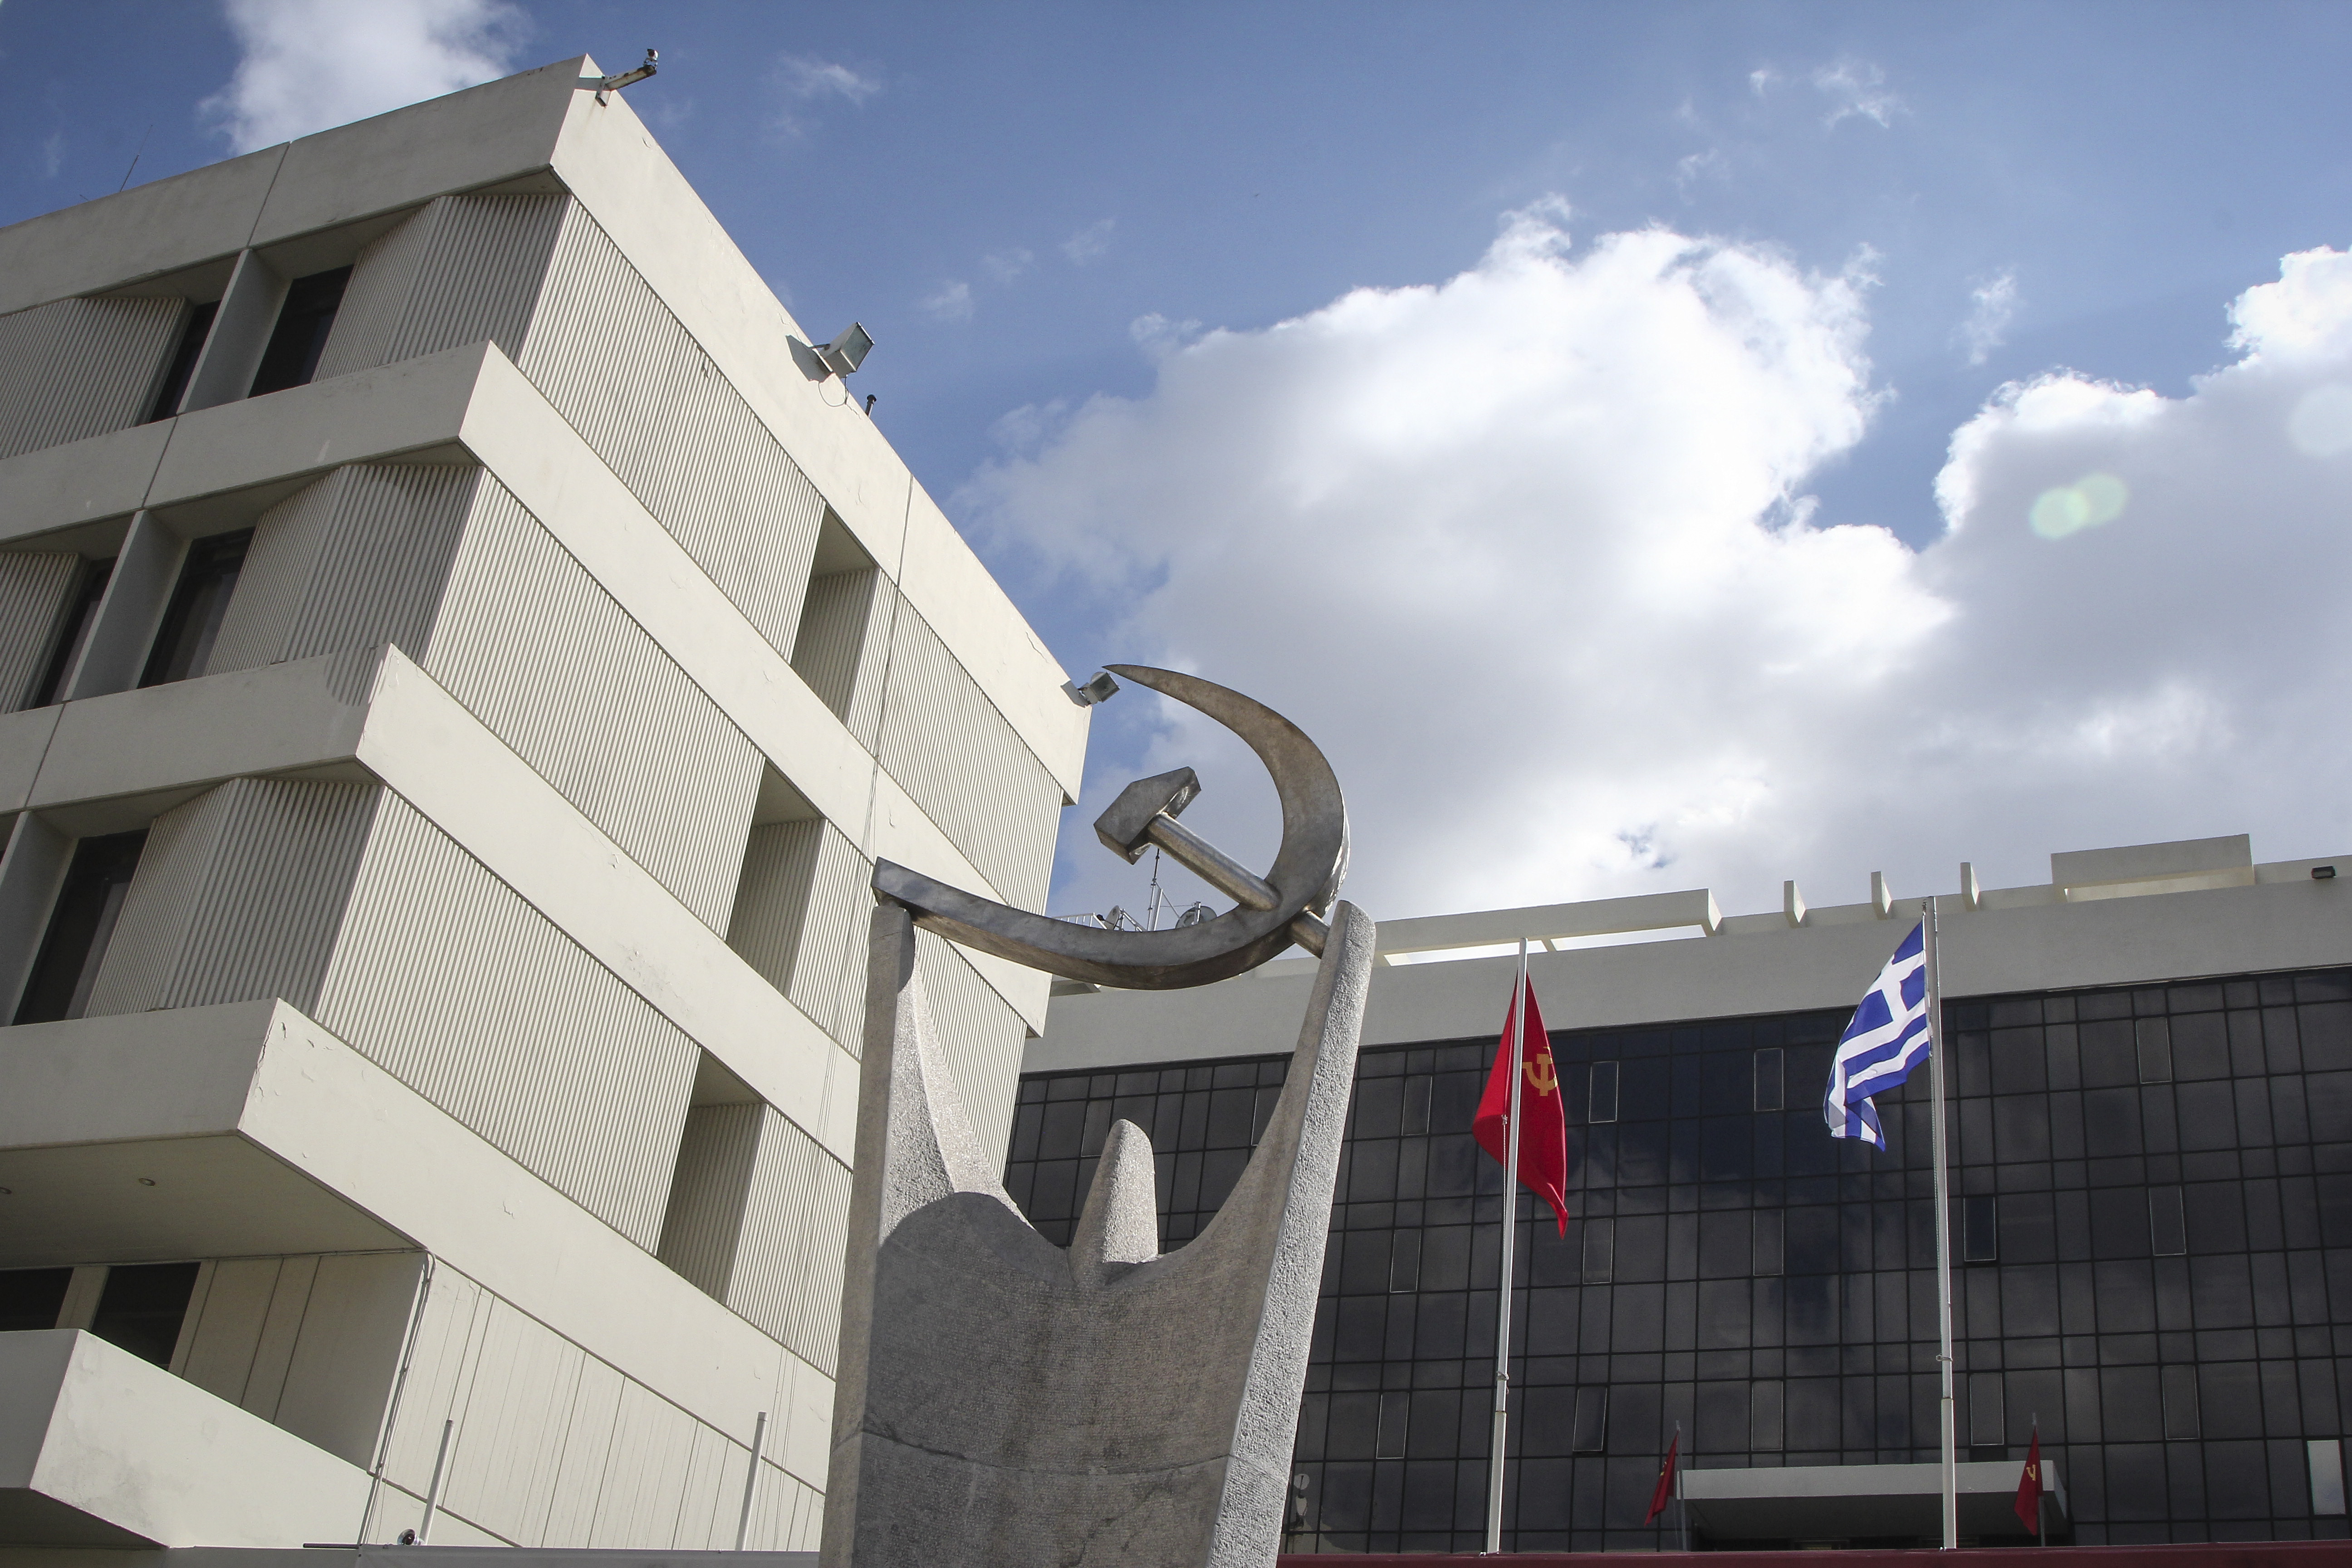 ΚΚΕ: Με γυρολόγους της πολιτικής ο Τσίπρας φτιάχνει μια τυχοδιωκτική συμμαχία